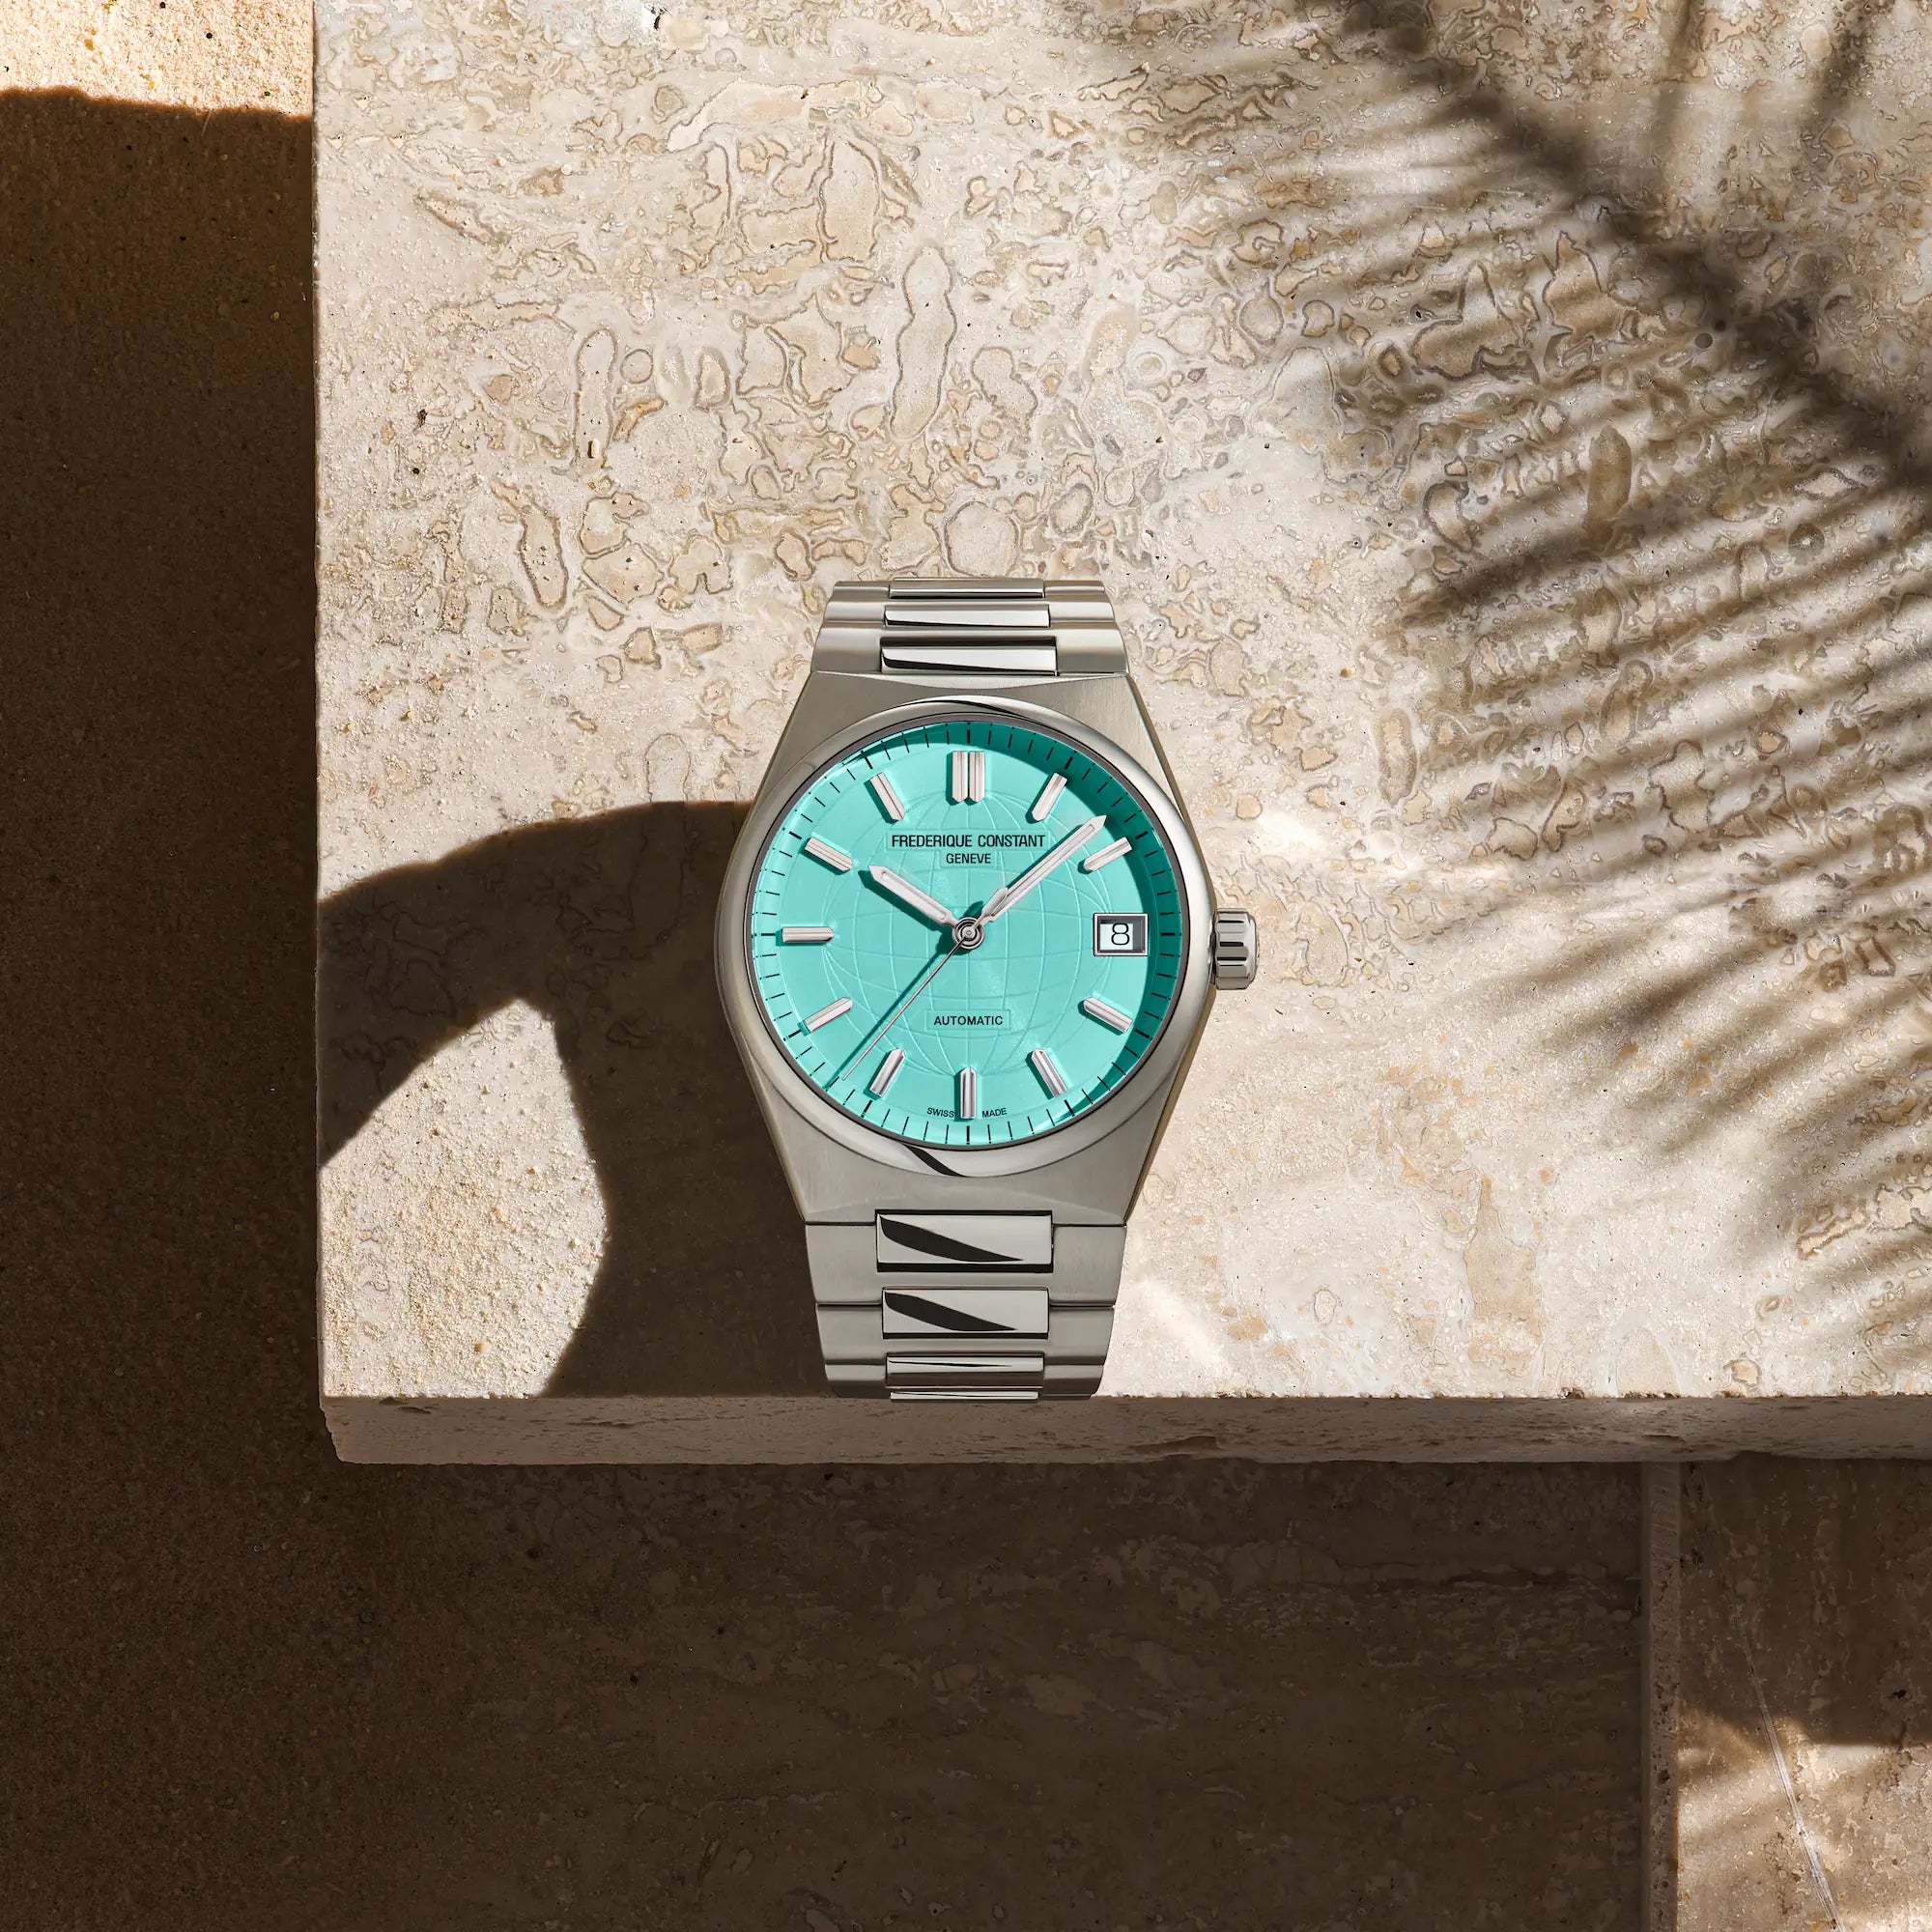 Produktfotografie der er Frederique Constant Uhr "Highlife Ladies Automatic" mit dem Tiffany-blauen Zifferblatt und Edelstahl-Gehäuse mit Blick auf das Uhrwerk (vor einem beigen Stein als Hintergrund)